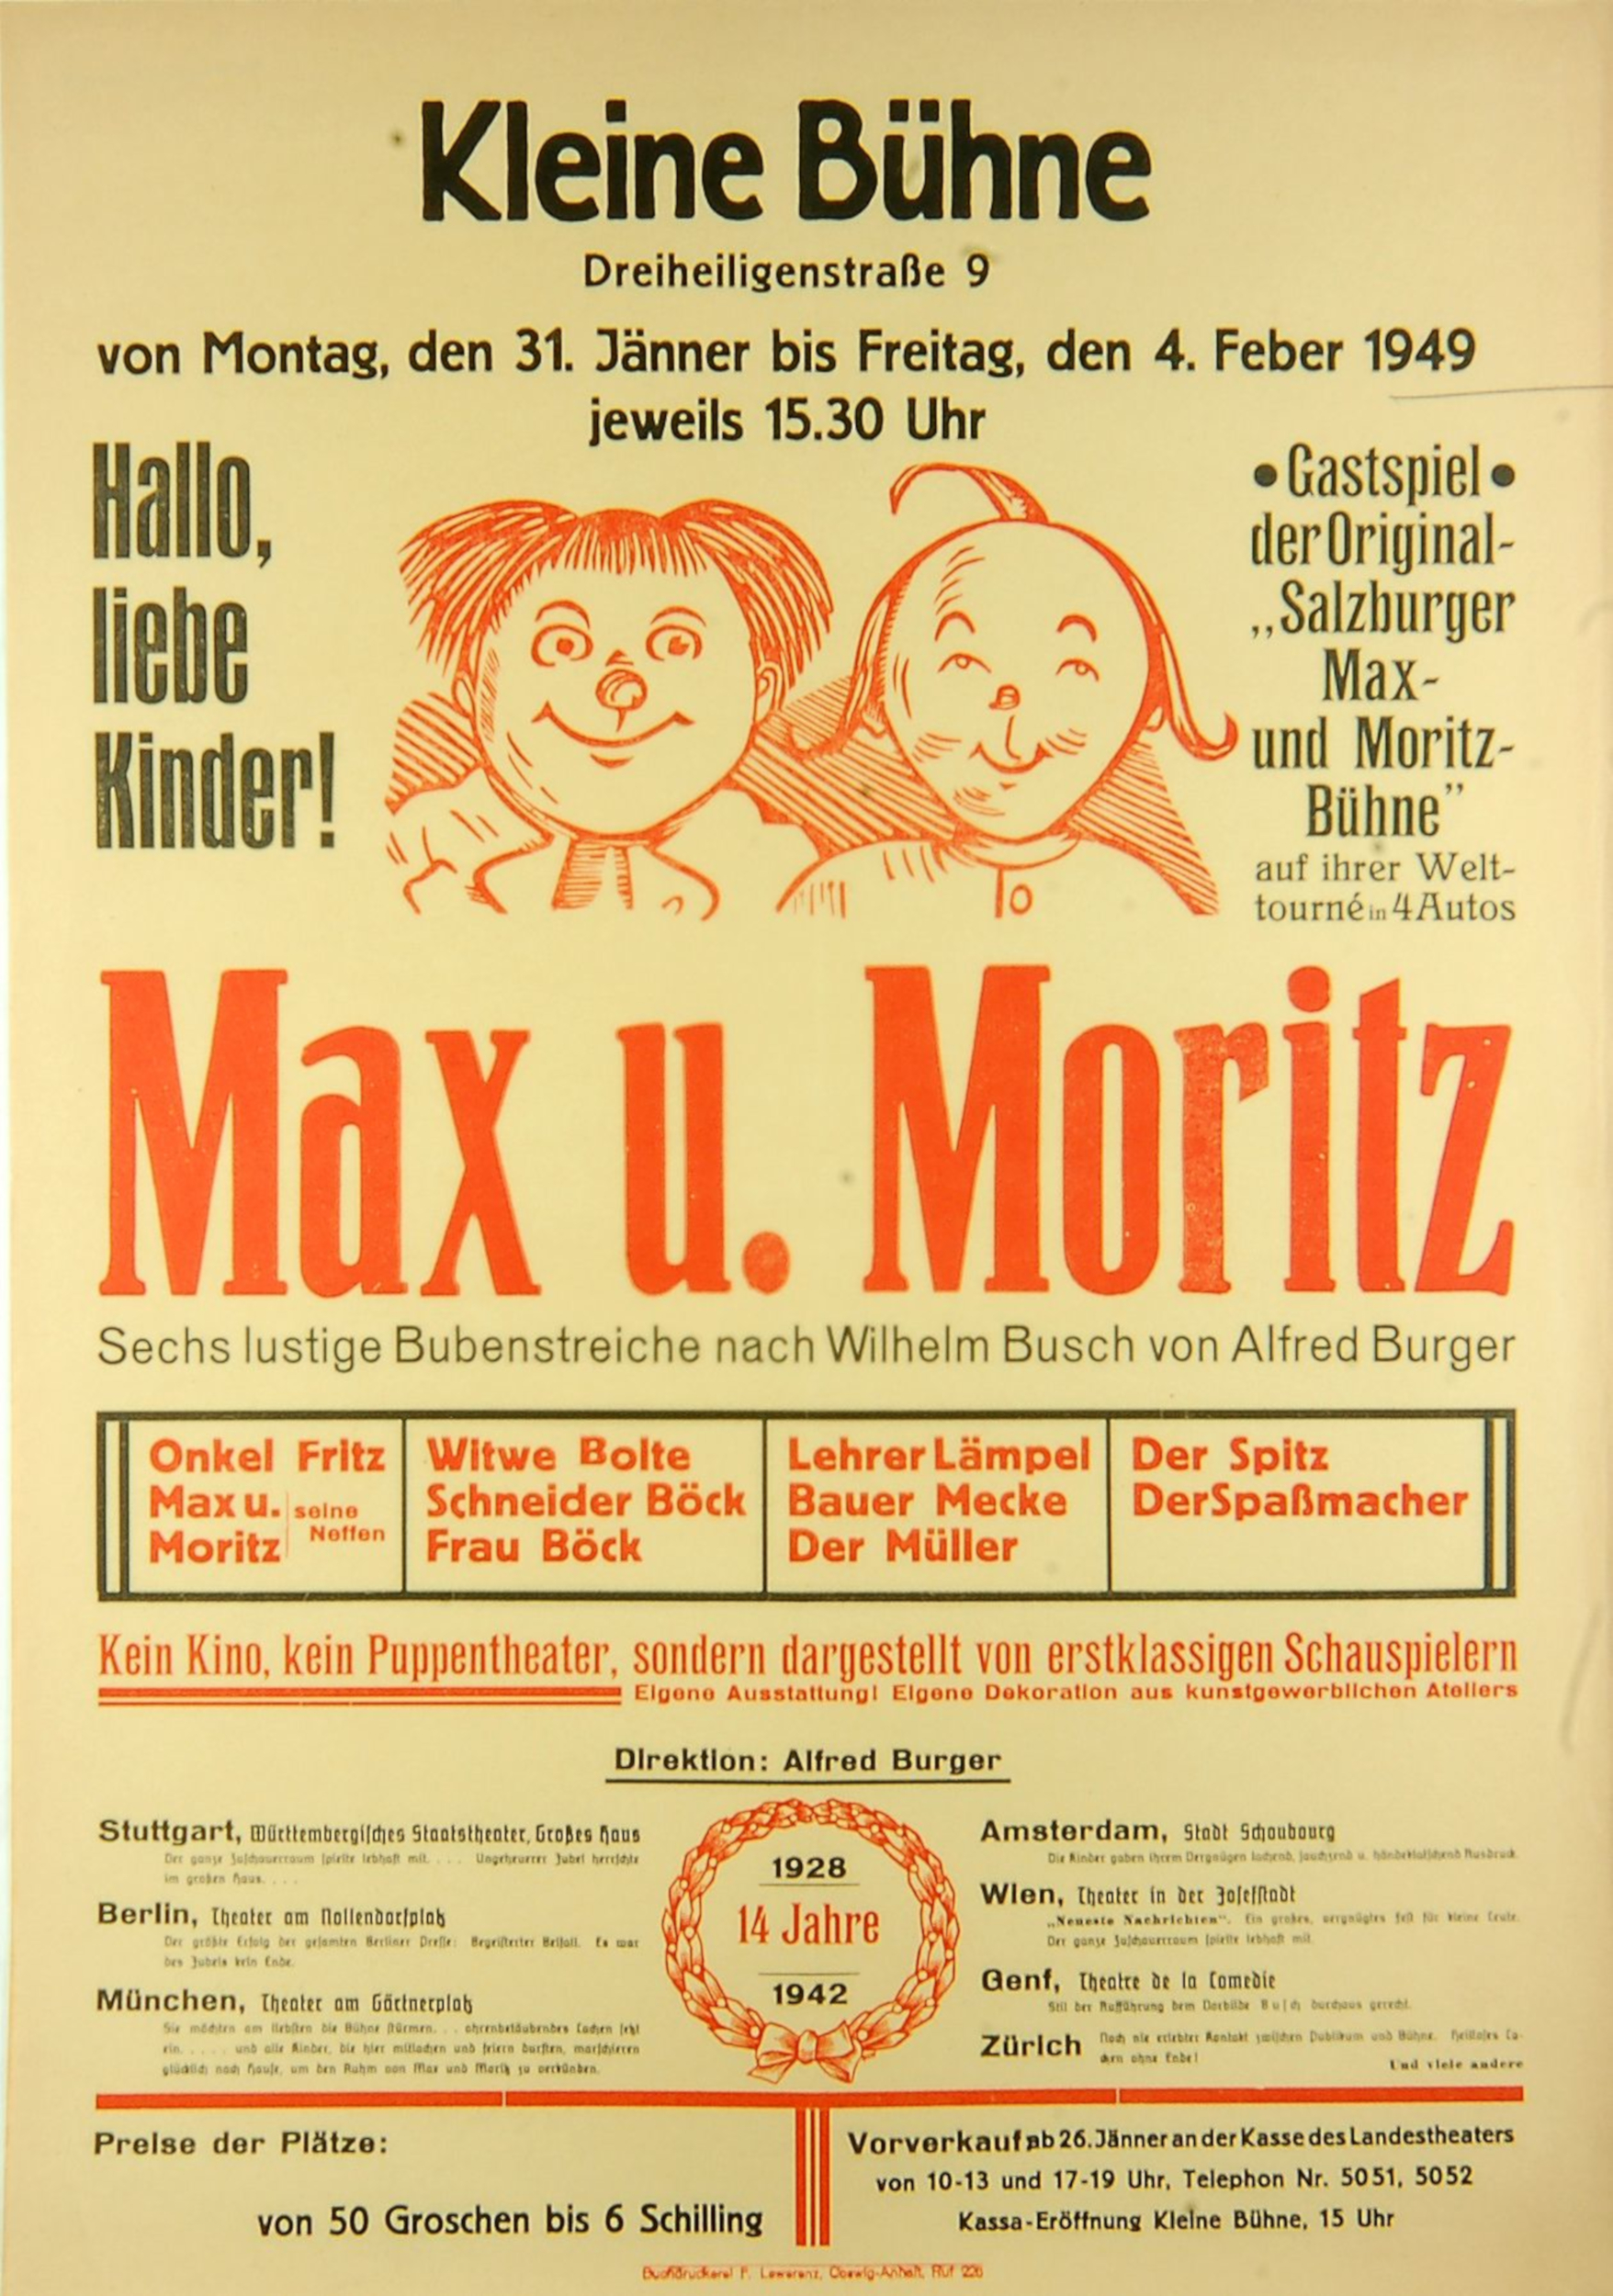 Max Und Moritz